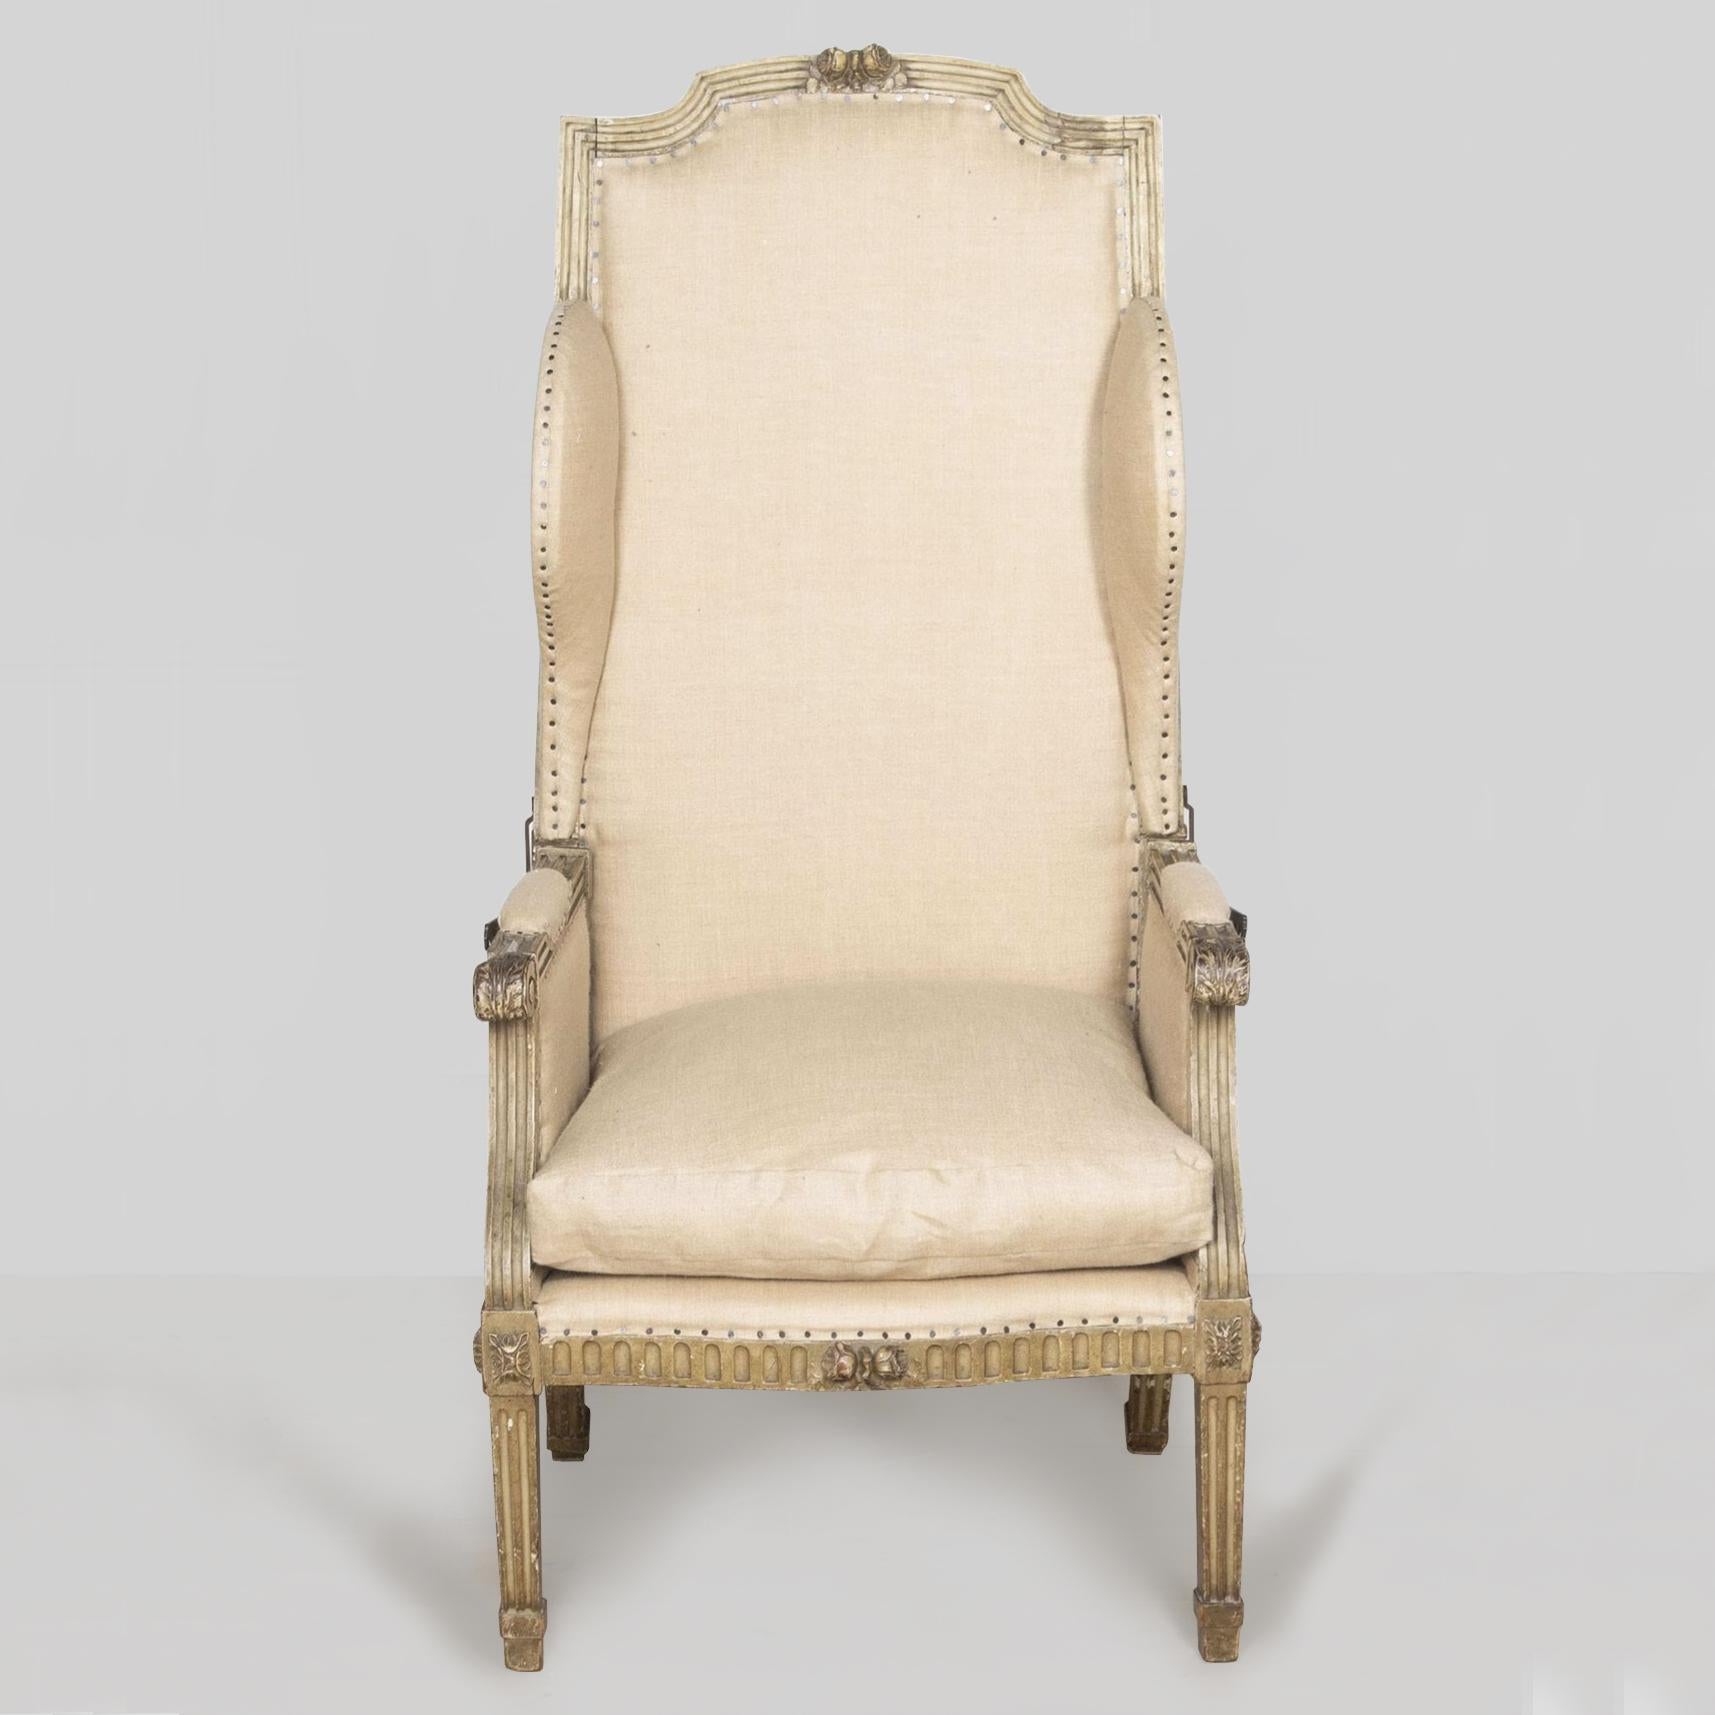 Sehr ungewöhnlicher französischer Louis XVI-Liegestuhl aus dem 18. Jahrhundert. 

Die sehr hohe Rückenlehne hat eine geschnitzte und geformte Platte. 

Die flachen Flügel stehen auf einem kanalisierten Rahmen, die gesamte Rückenlehne ruht auf